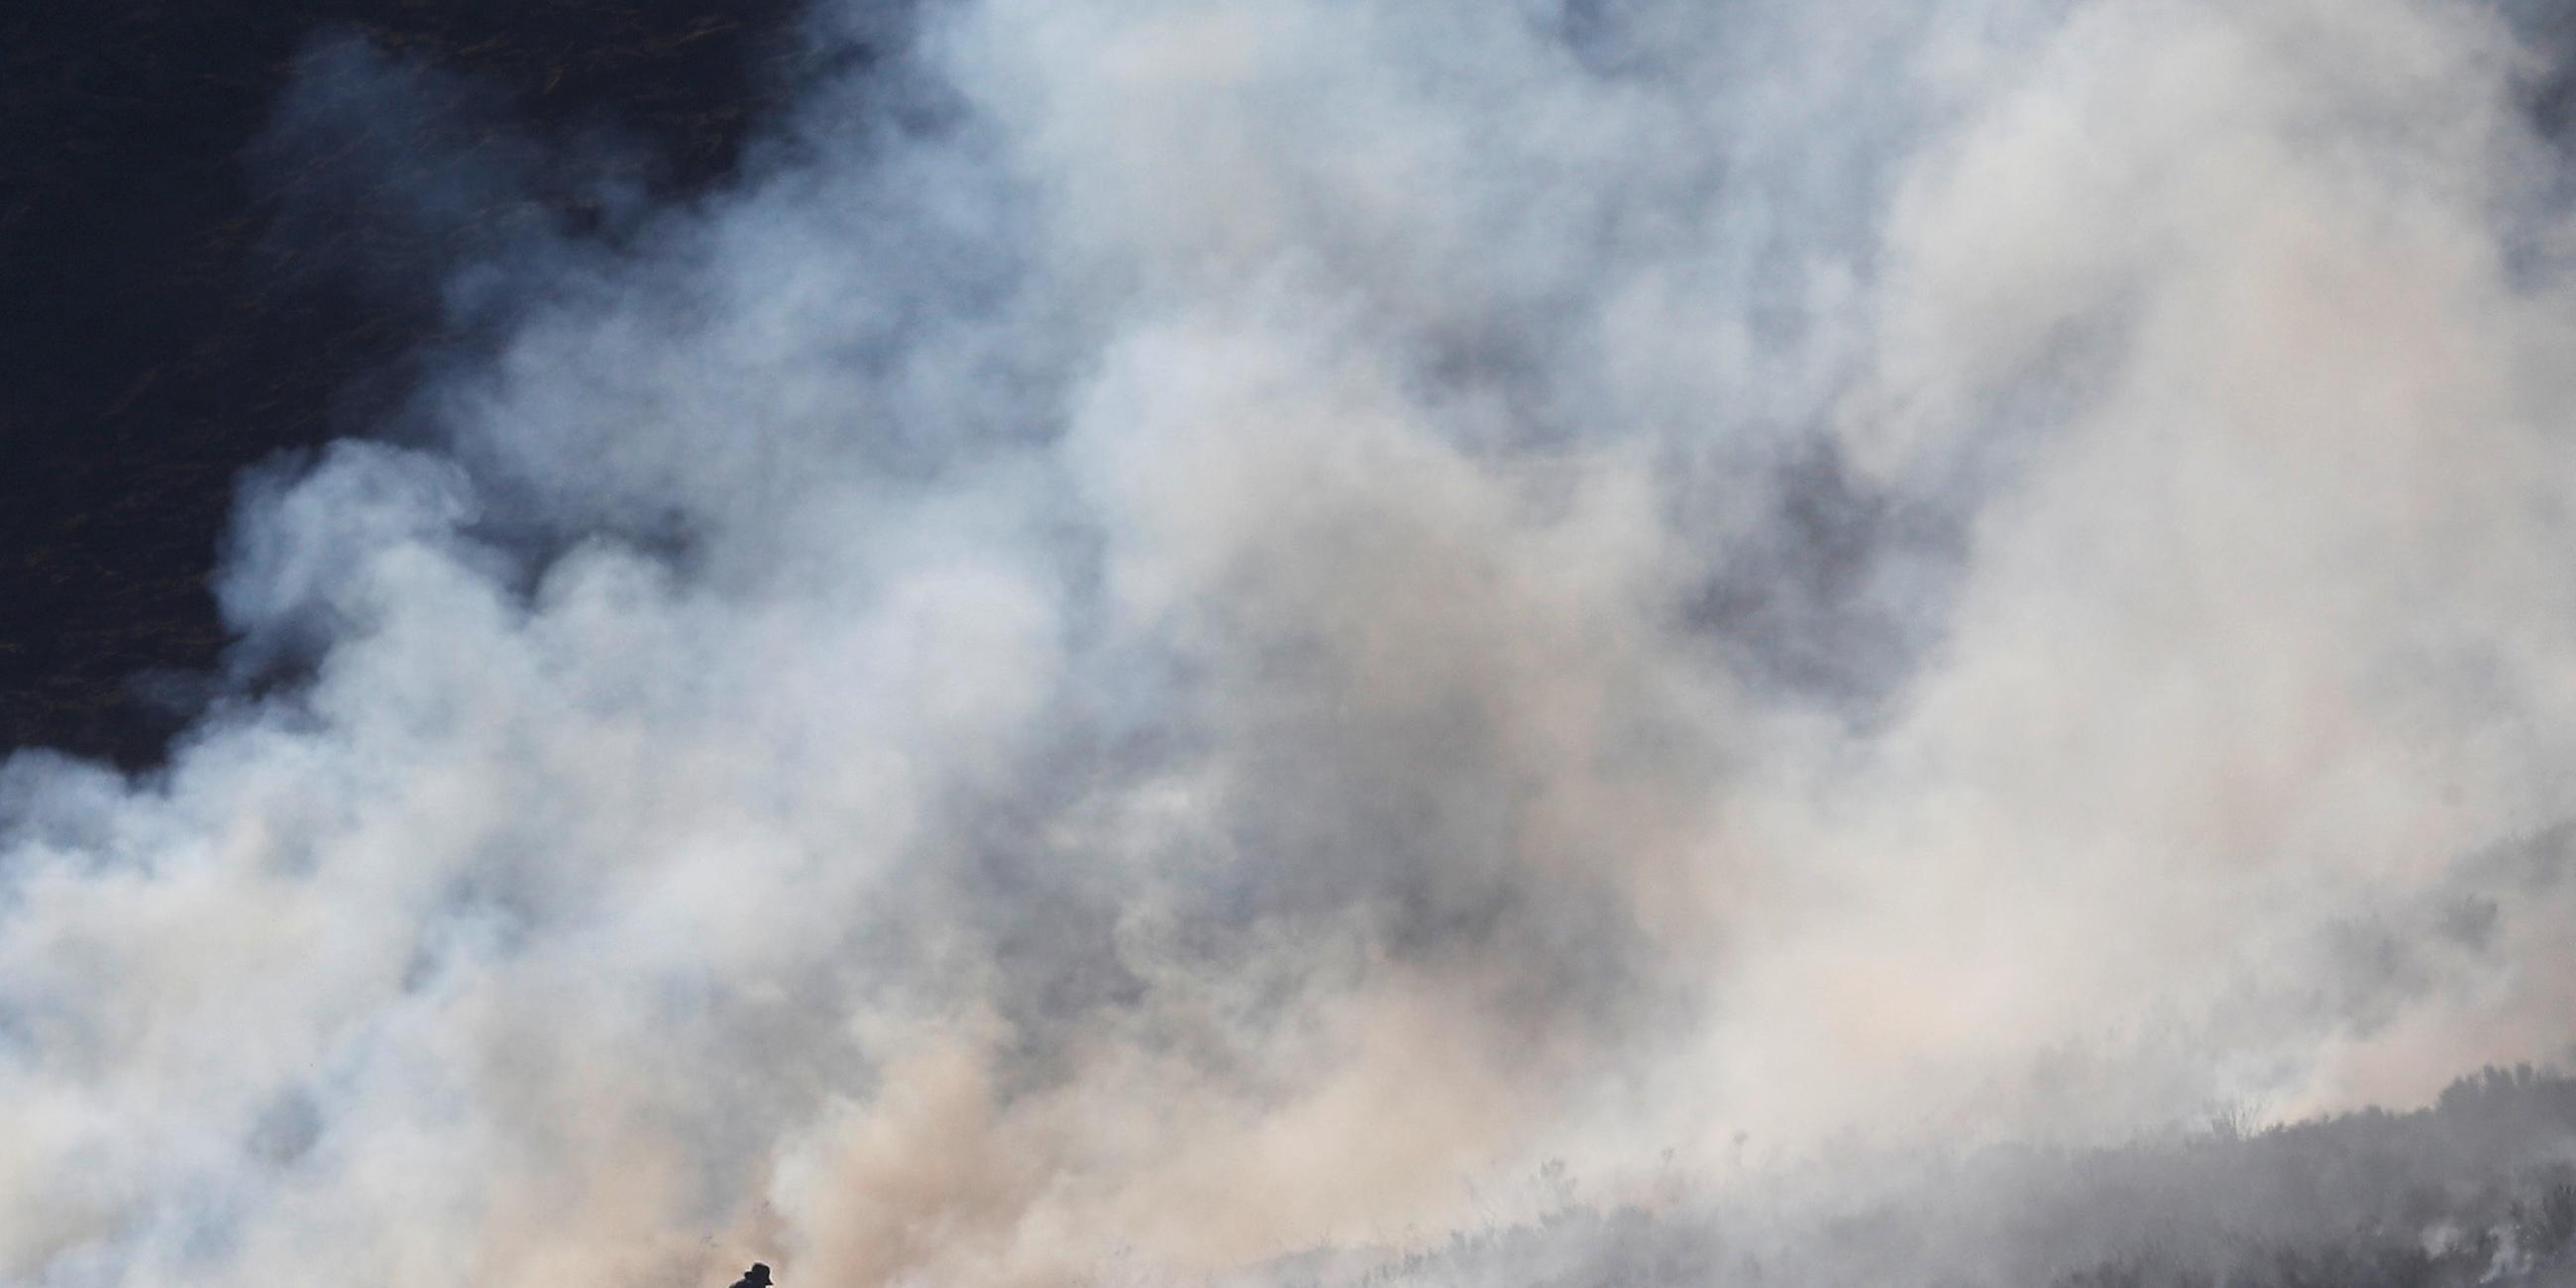 Feuerwehrmänner kämpfen gegen Flammen und Rauch im Moor nahe Manchester